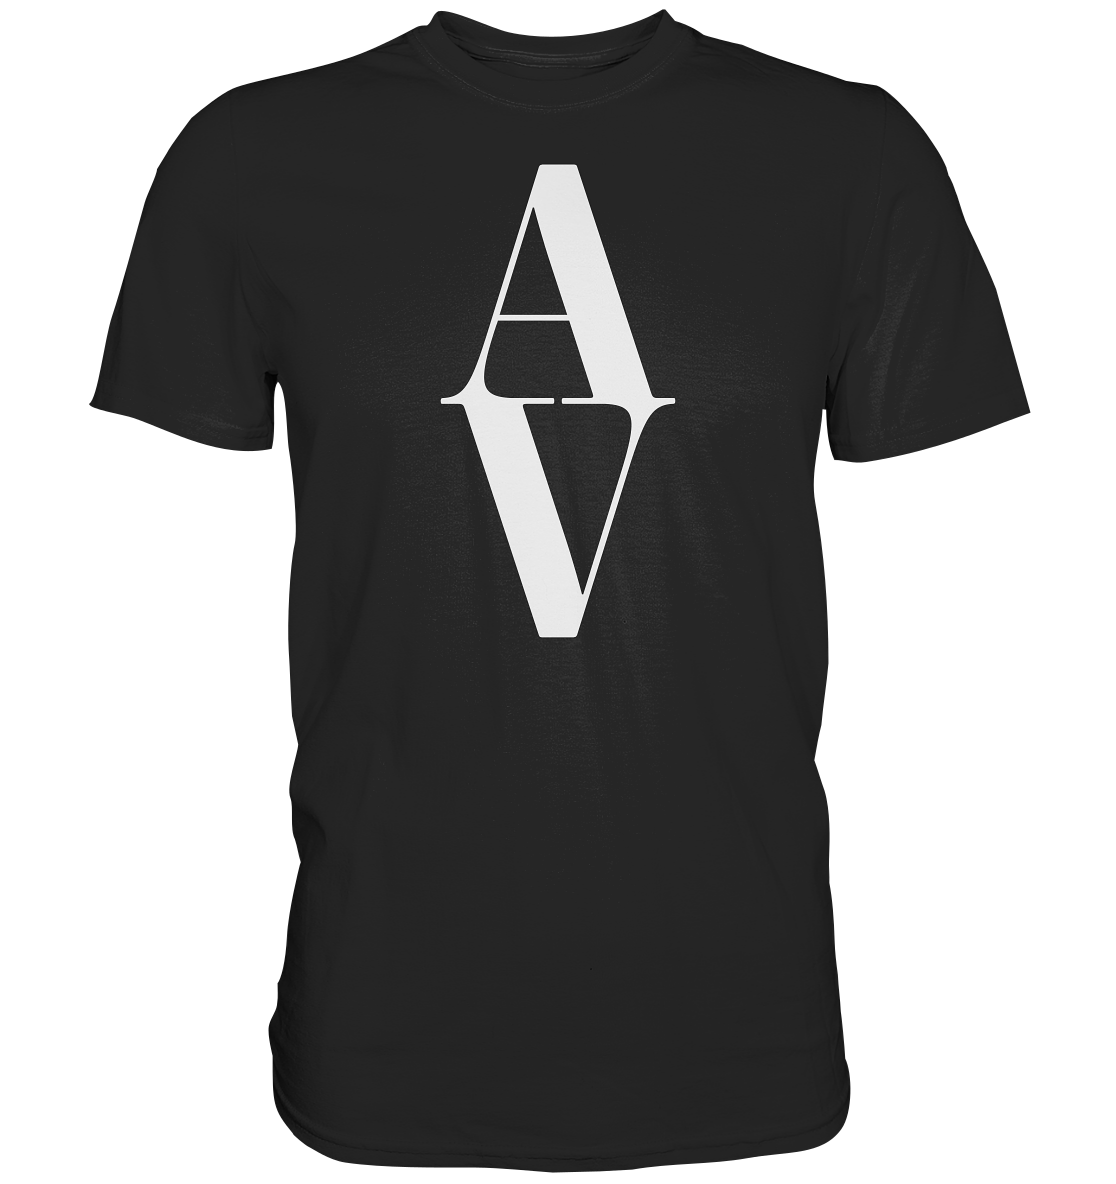 AV / Premium Unisex Tshirt with White AV Logo